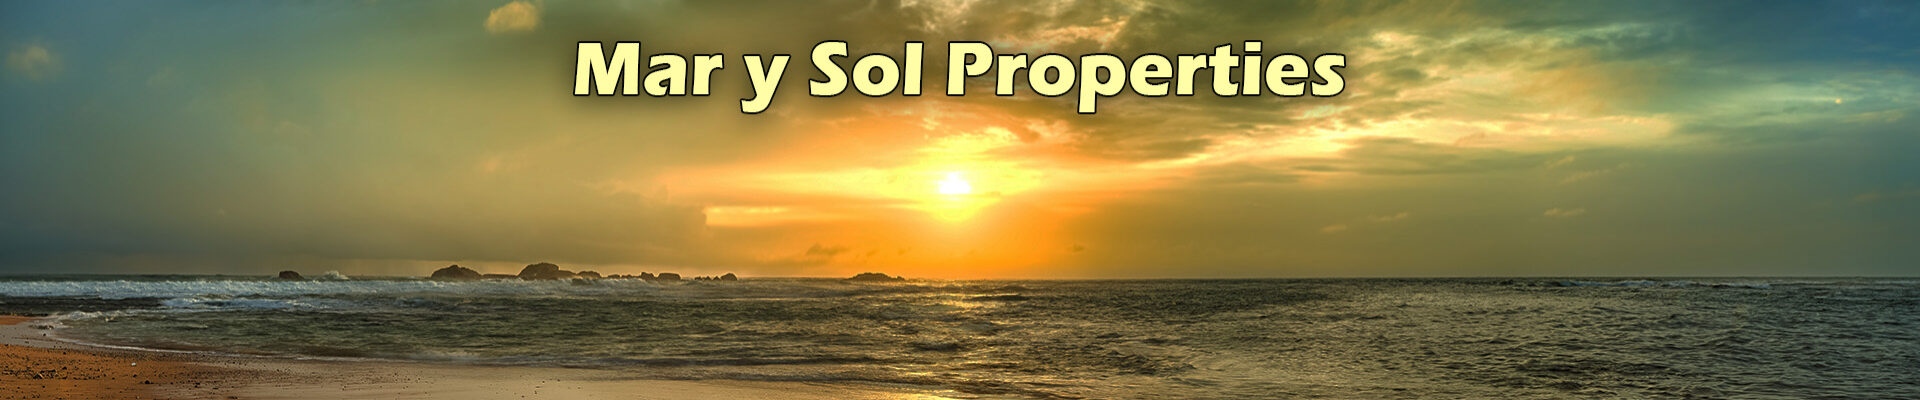 Mar y Sol Properties